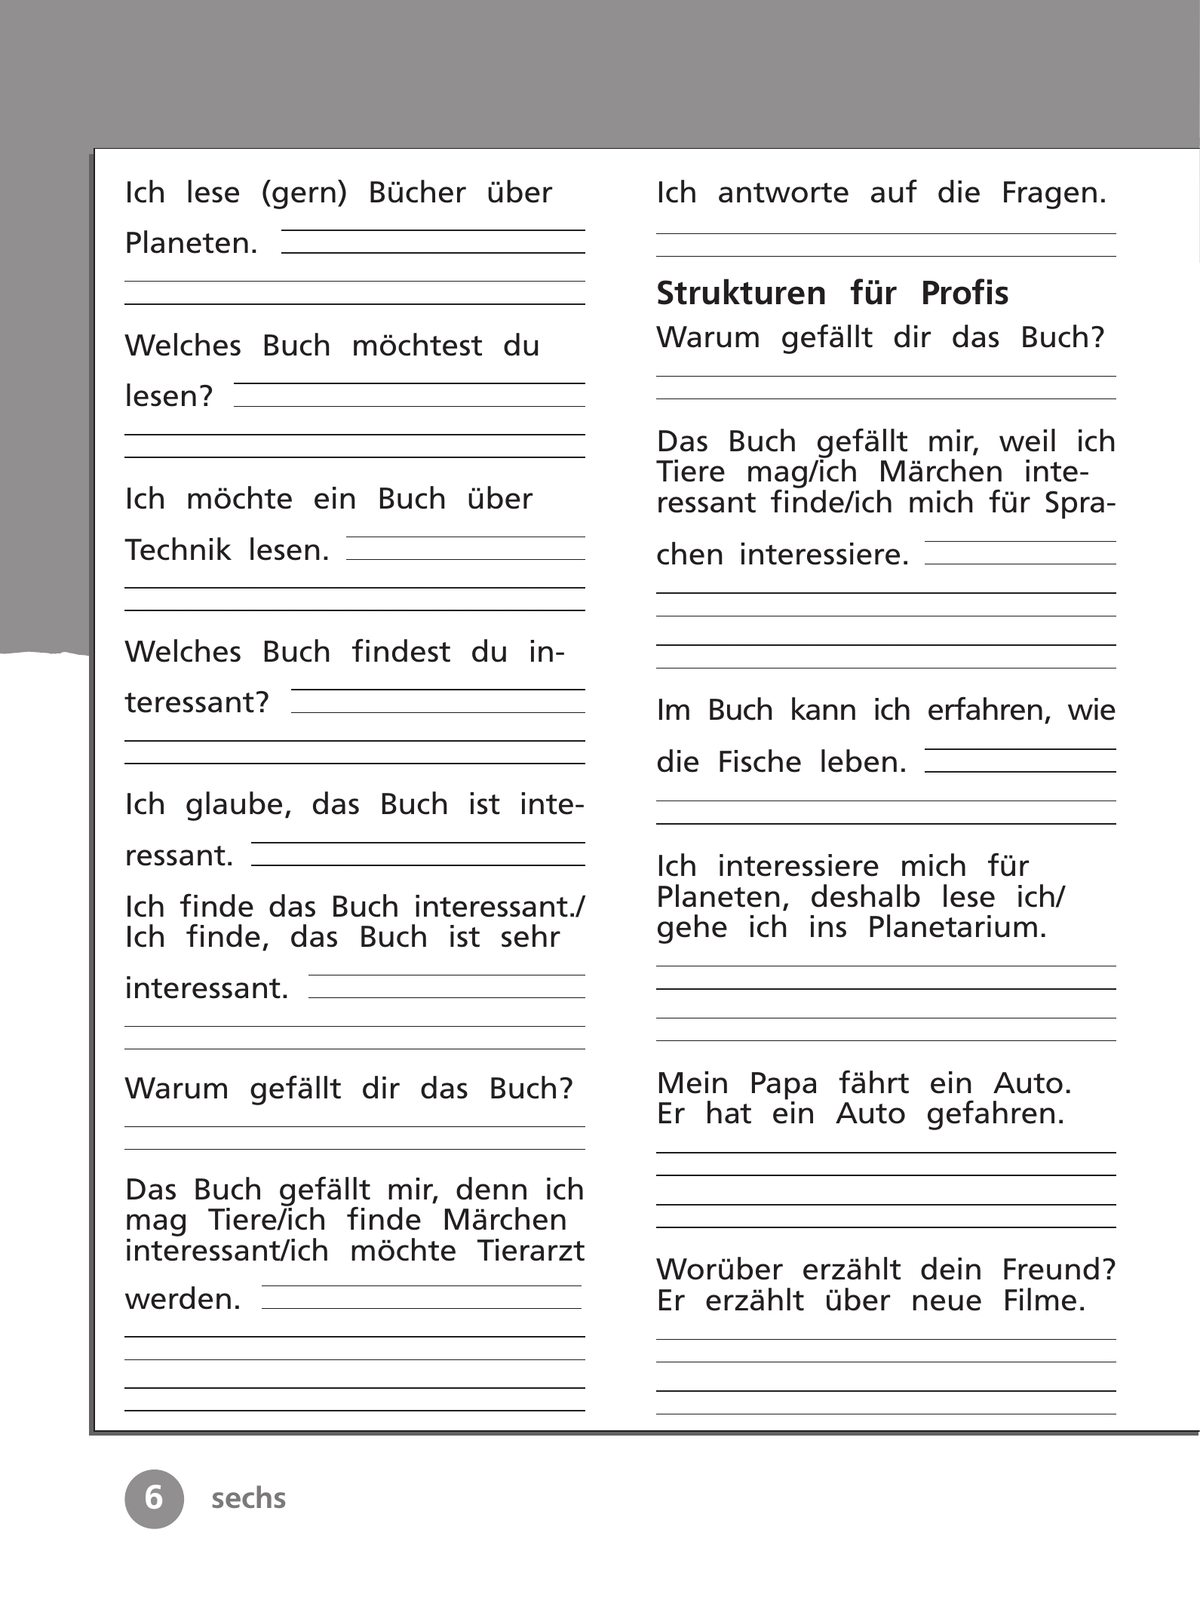 Немецкий язык. Рабочая тетрадь. 4 класс. В 2 ч. Часть 2 4